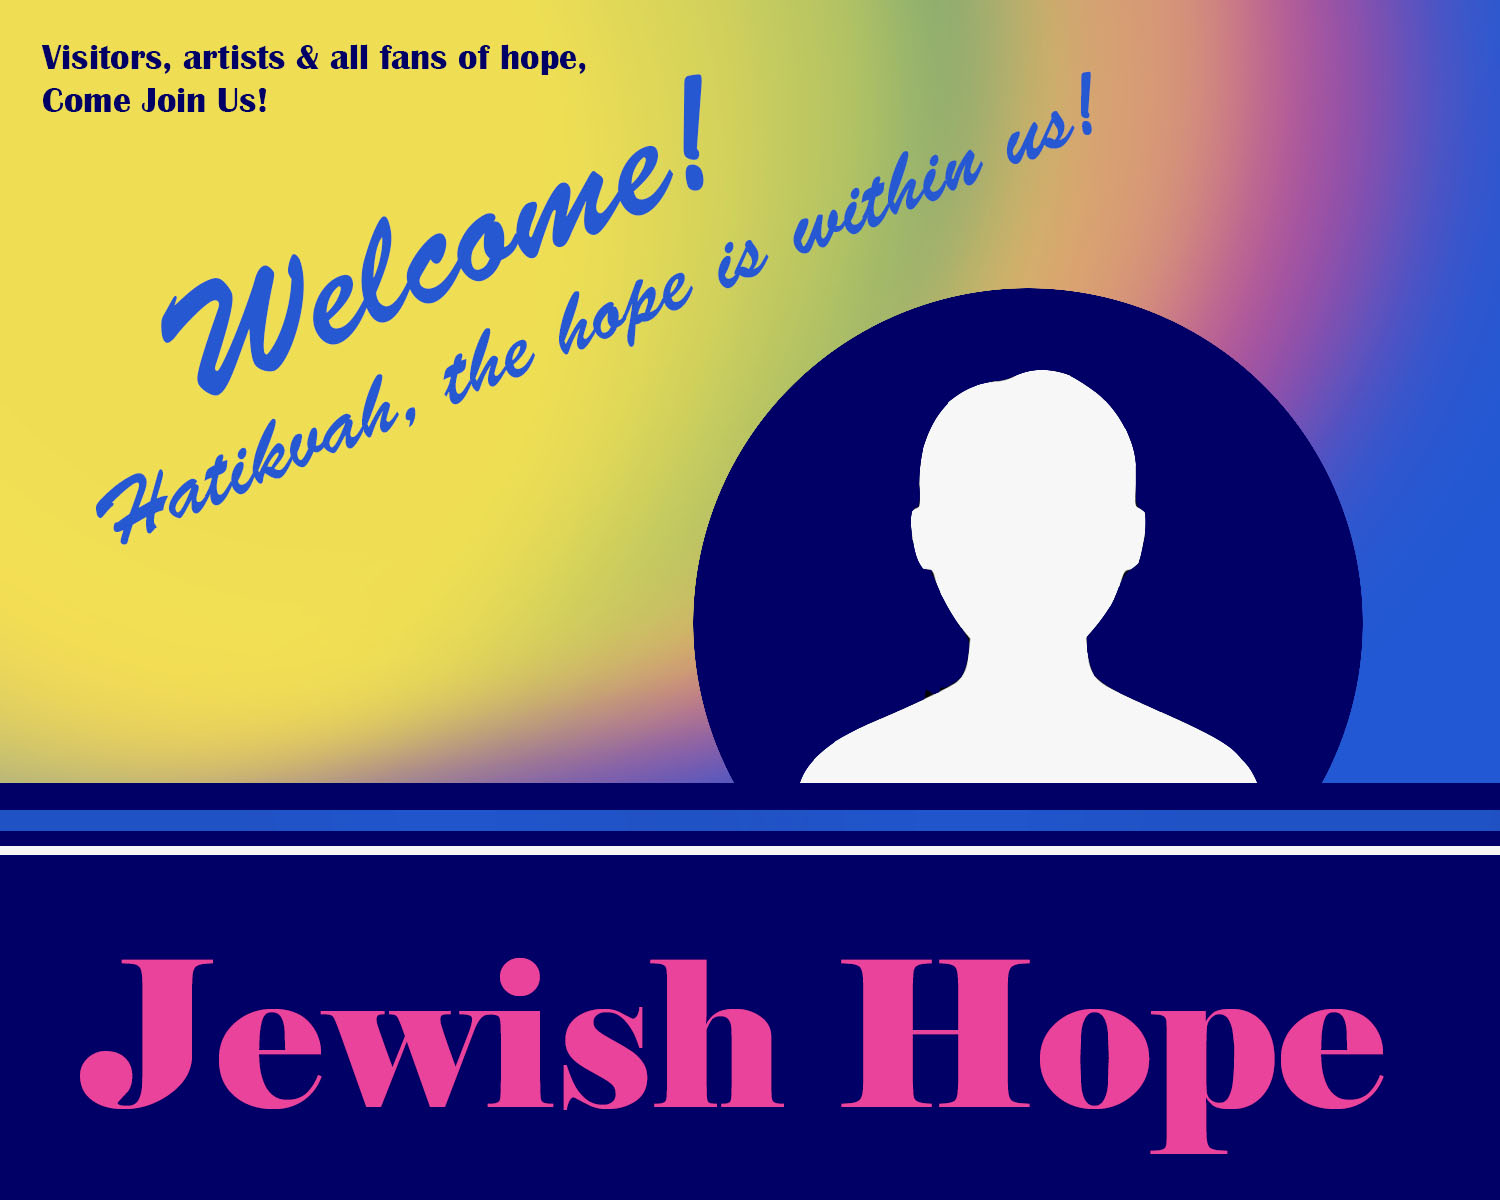 JewishHope_WelcomeAndJoin_Image